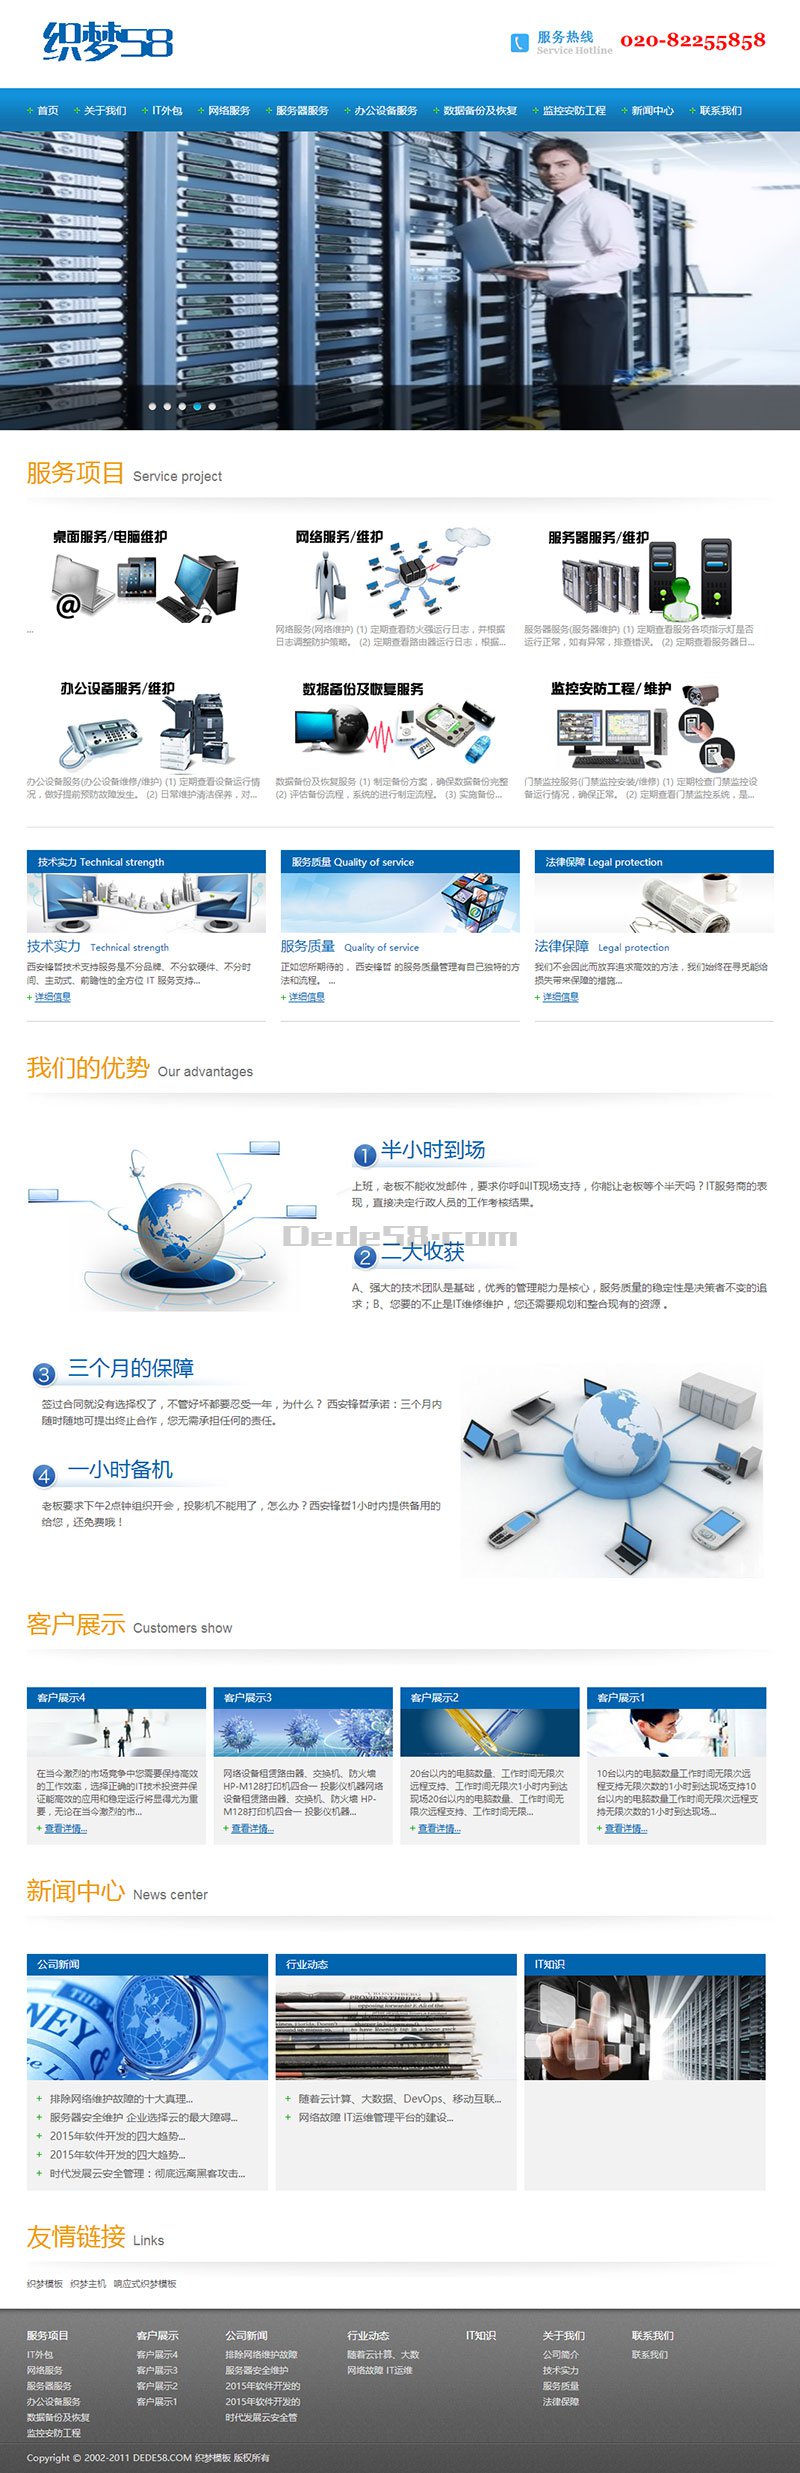 织梦网络IT信息服务类企业网站织梦dedecms模板插图